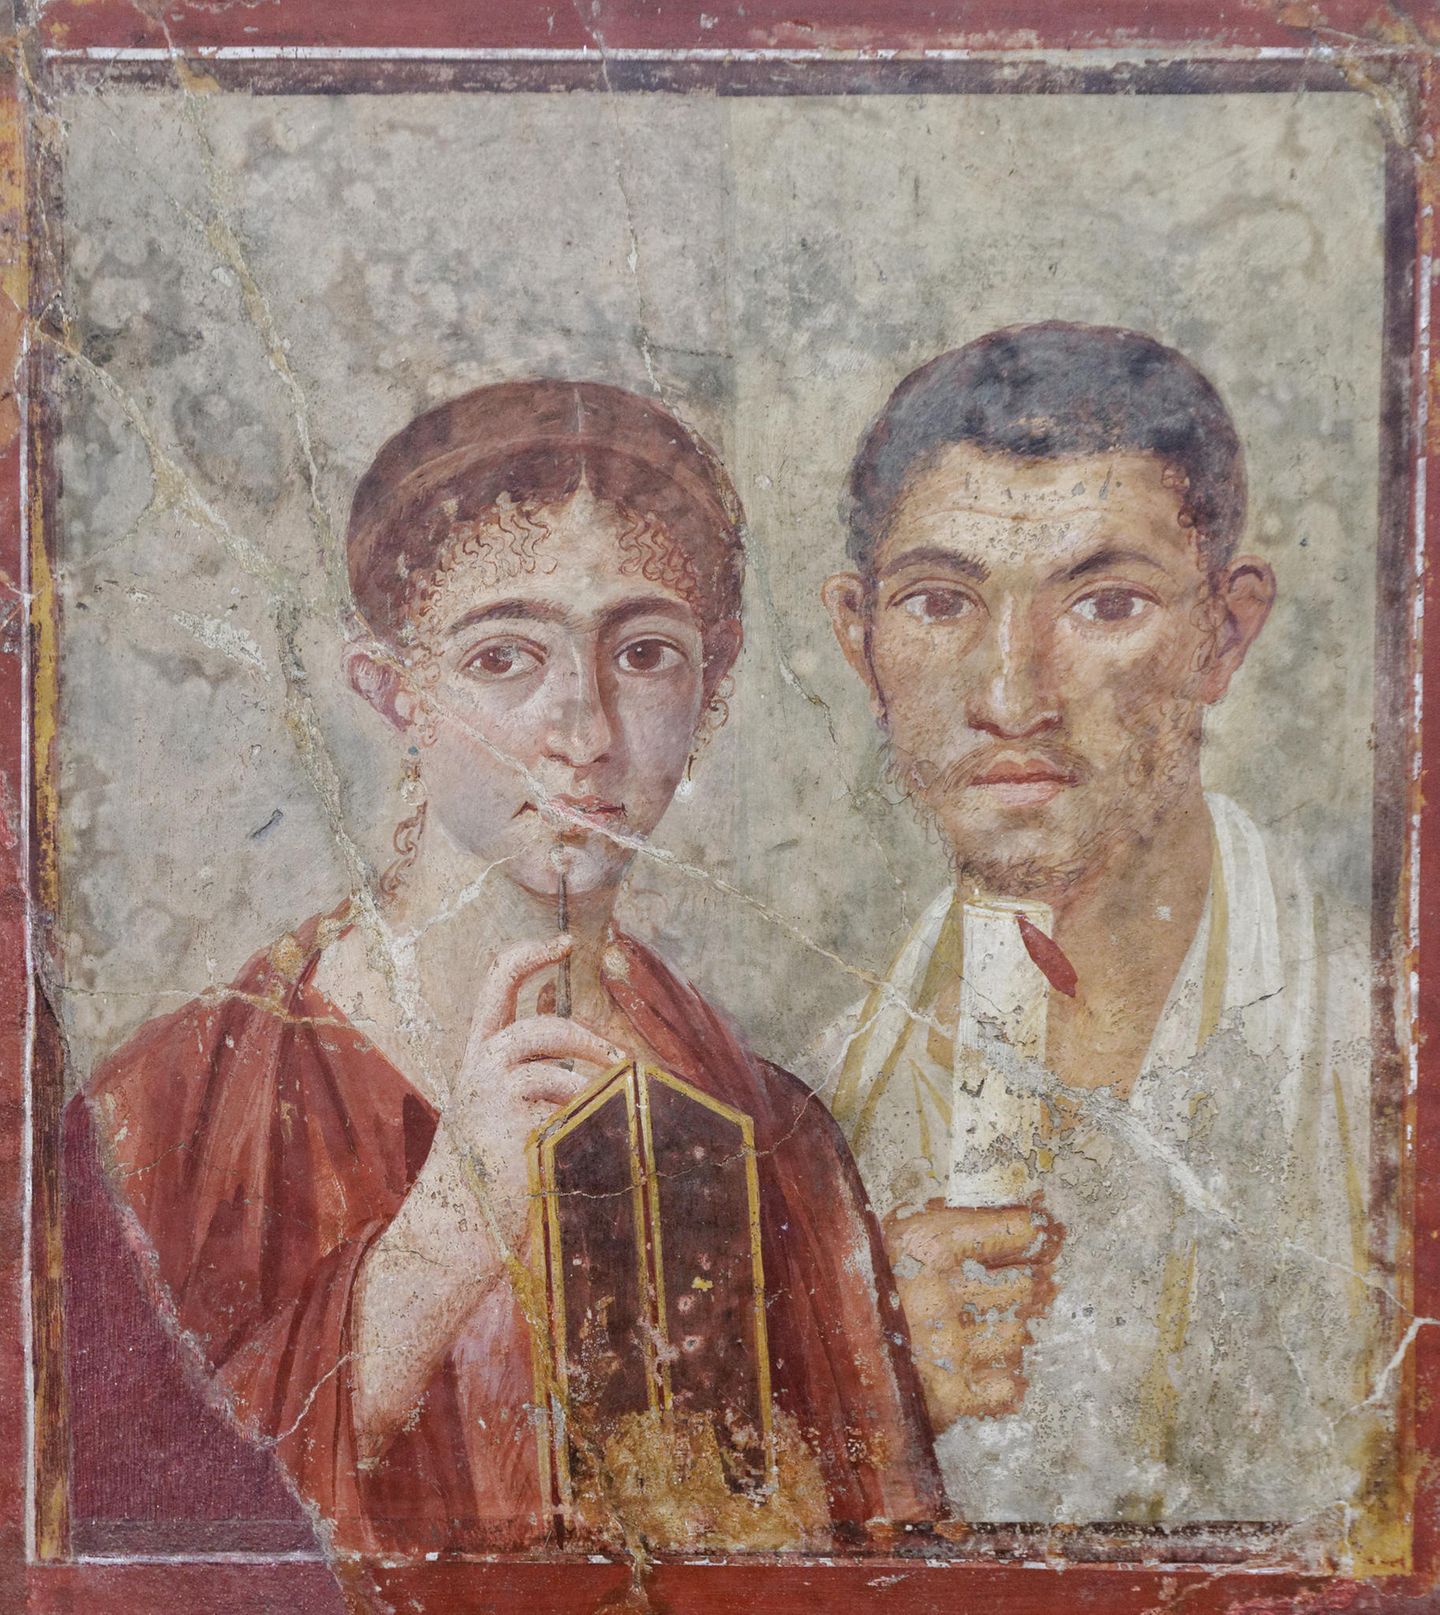 Das Paar zeigt sich mit den Insignien gute Römer - sie betont ihre Bildung und ihre Rolle im Geschäft.